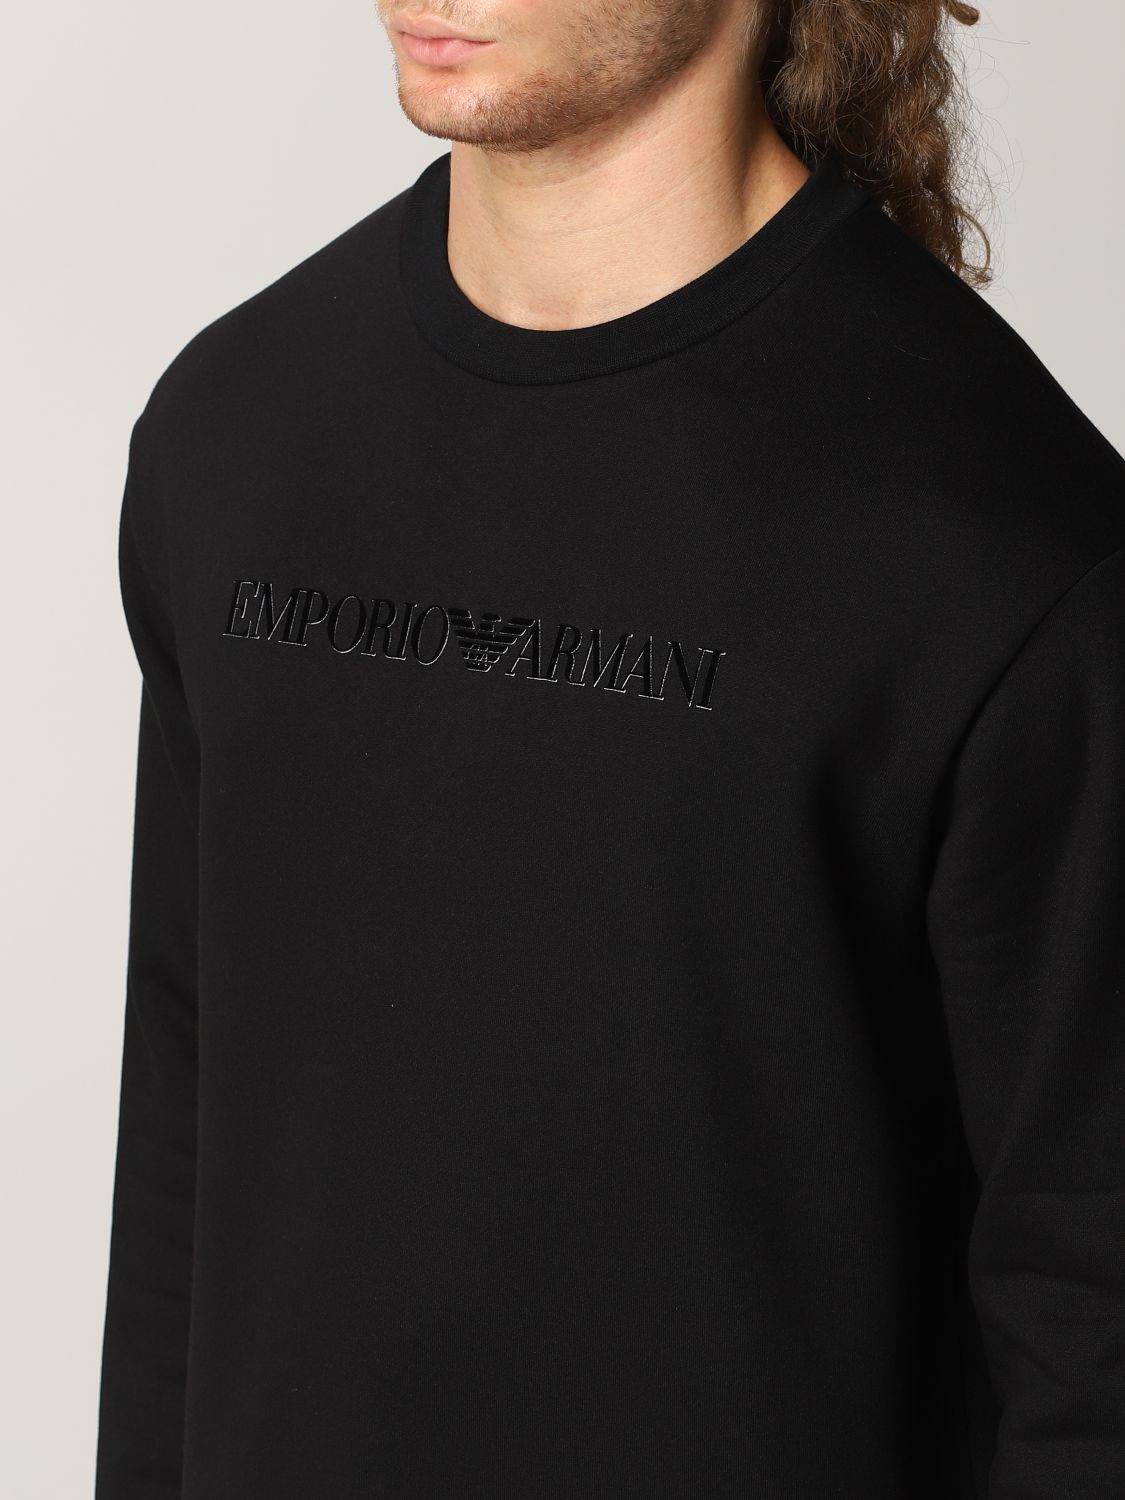 Sweatshirt Emporio Armani: Sweatshirt homme Emporio Armani noir 3